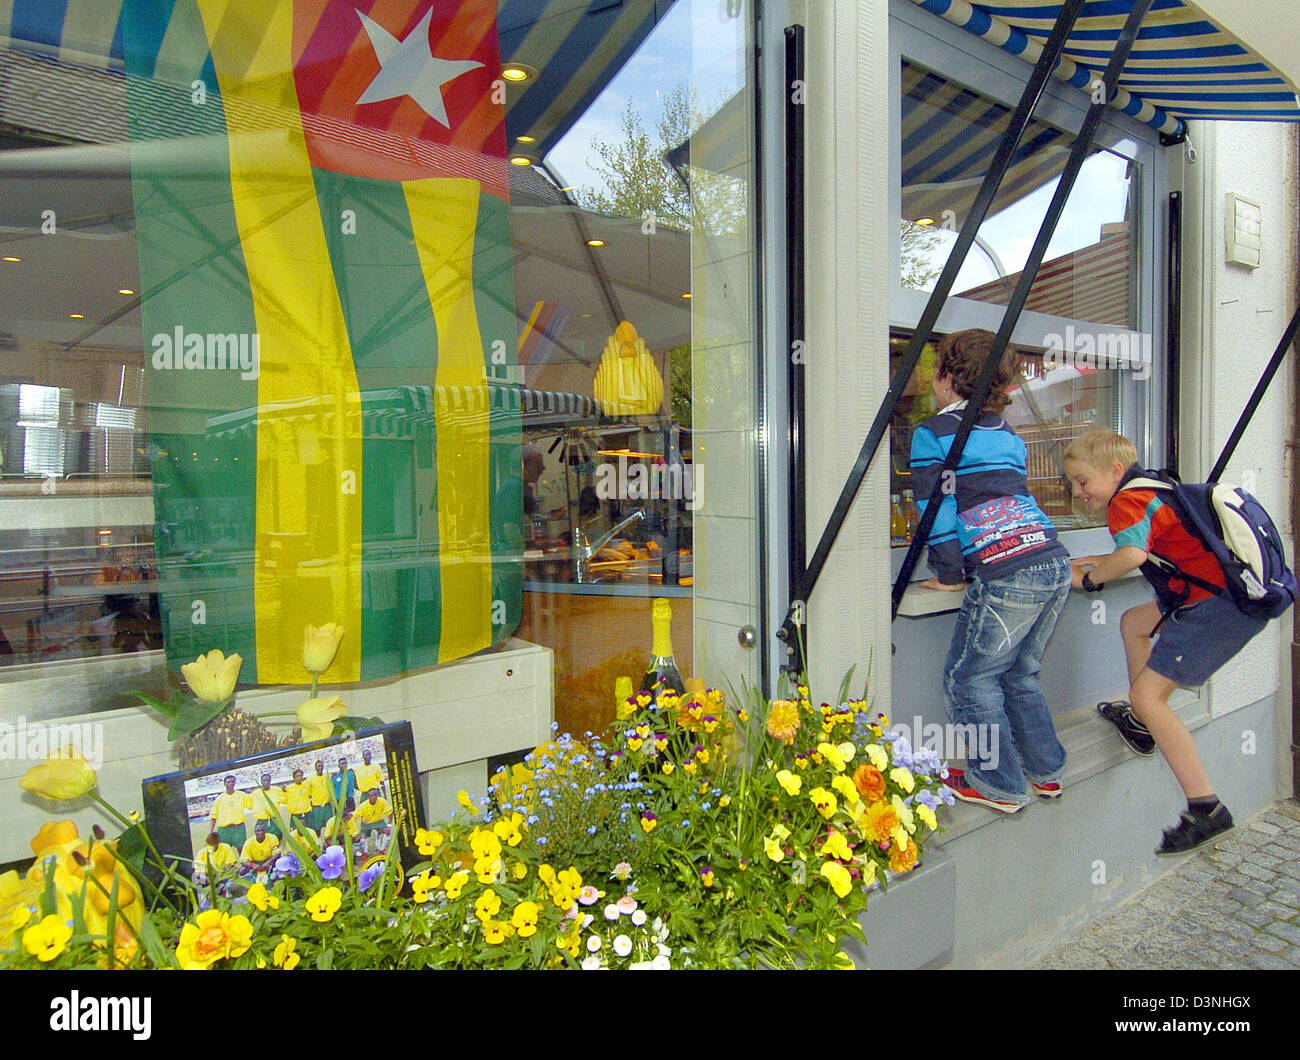 Un drapeau togolais et une photo de groupe qui est dans la fenêtre Afficher d'un magasin à Wangen, Allemagne, 15 mai 2006. La ville Wangen devient fou sur l'arrivée de l'équipe nationale de football du Togo. L'équipe de Westafrican lodge à Wangen pendant la Coupe du Monde de Football 2006. Photo : Stefan Udry Banque D'Images